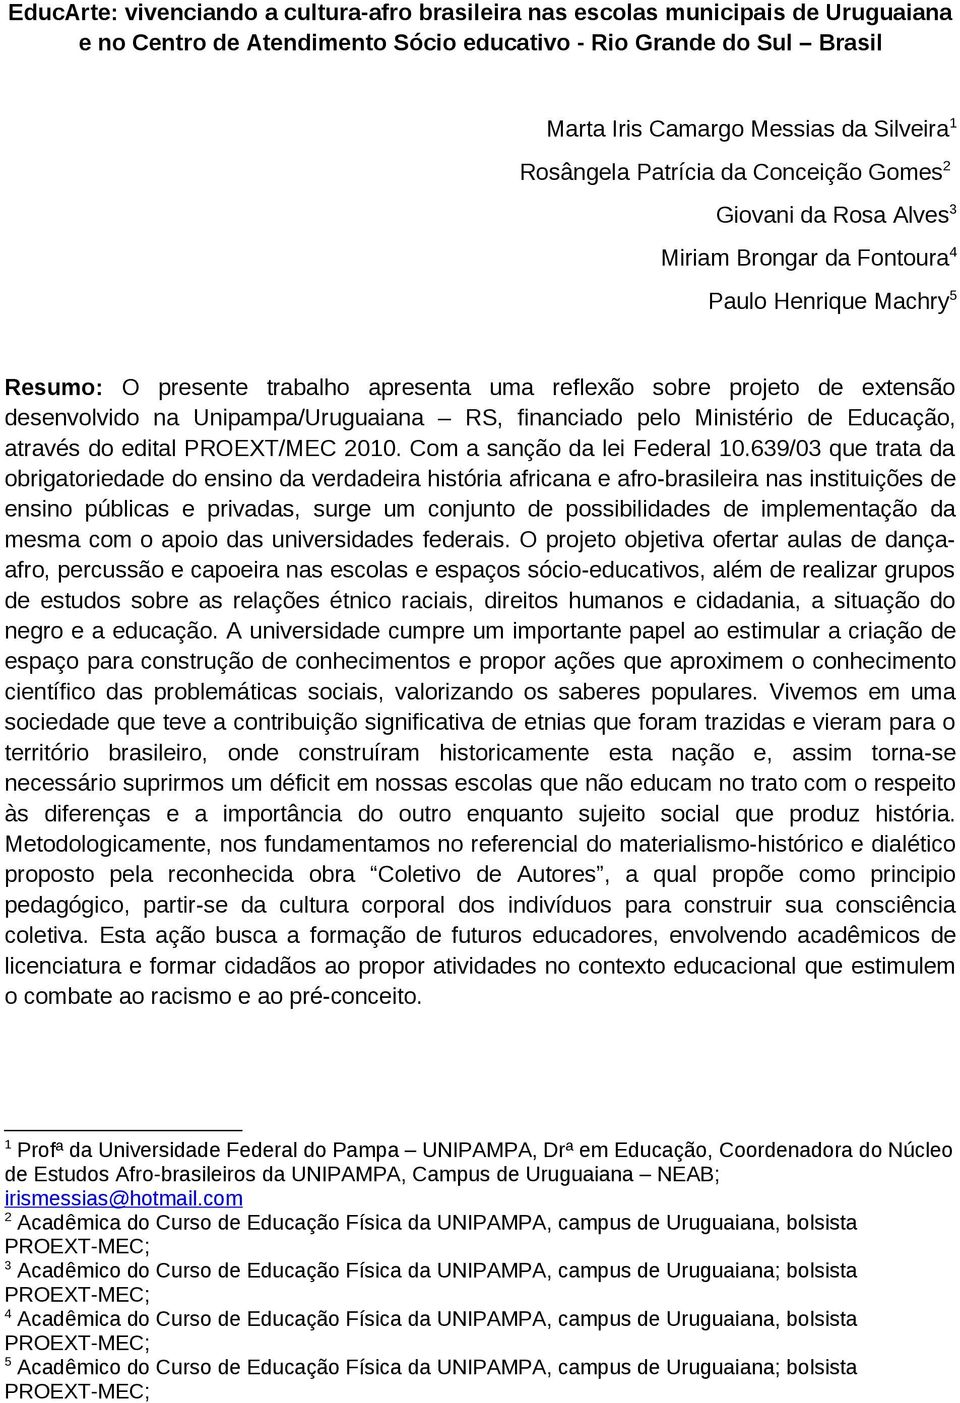 desenvolvido na Unipampa/Uruguaiana RS, financiado pelo Ministério de Educação, através do edital PROEXT/MEC 2010. Com a sanção da lei Federal 10.